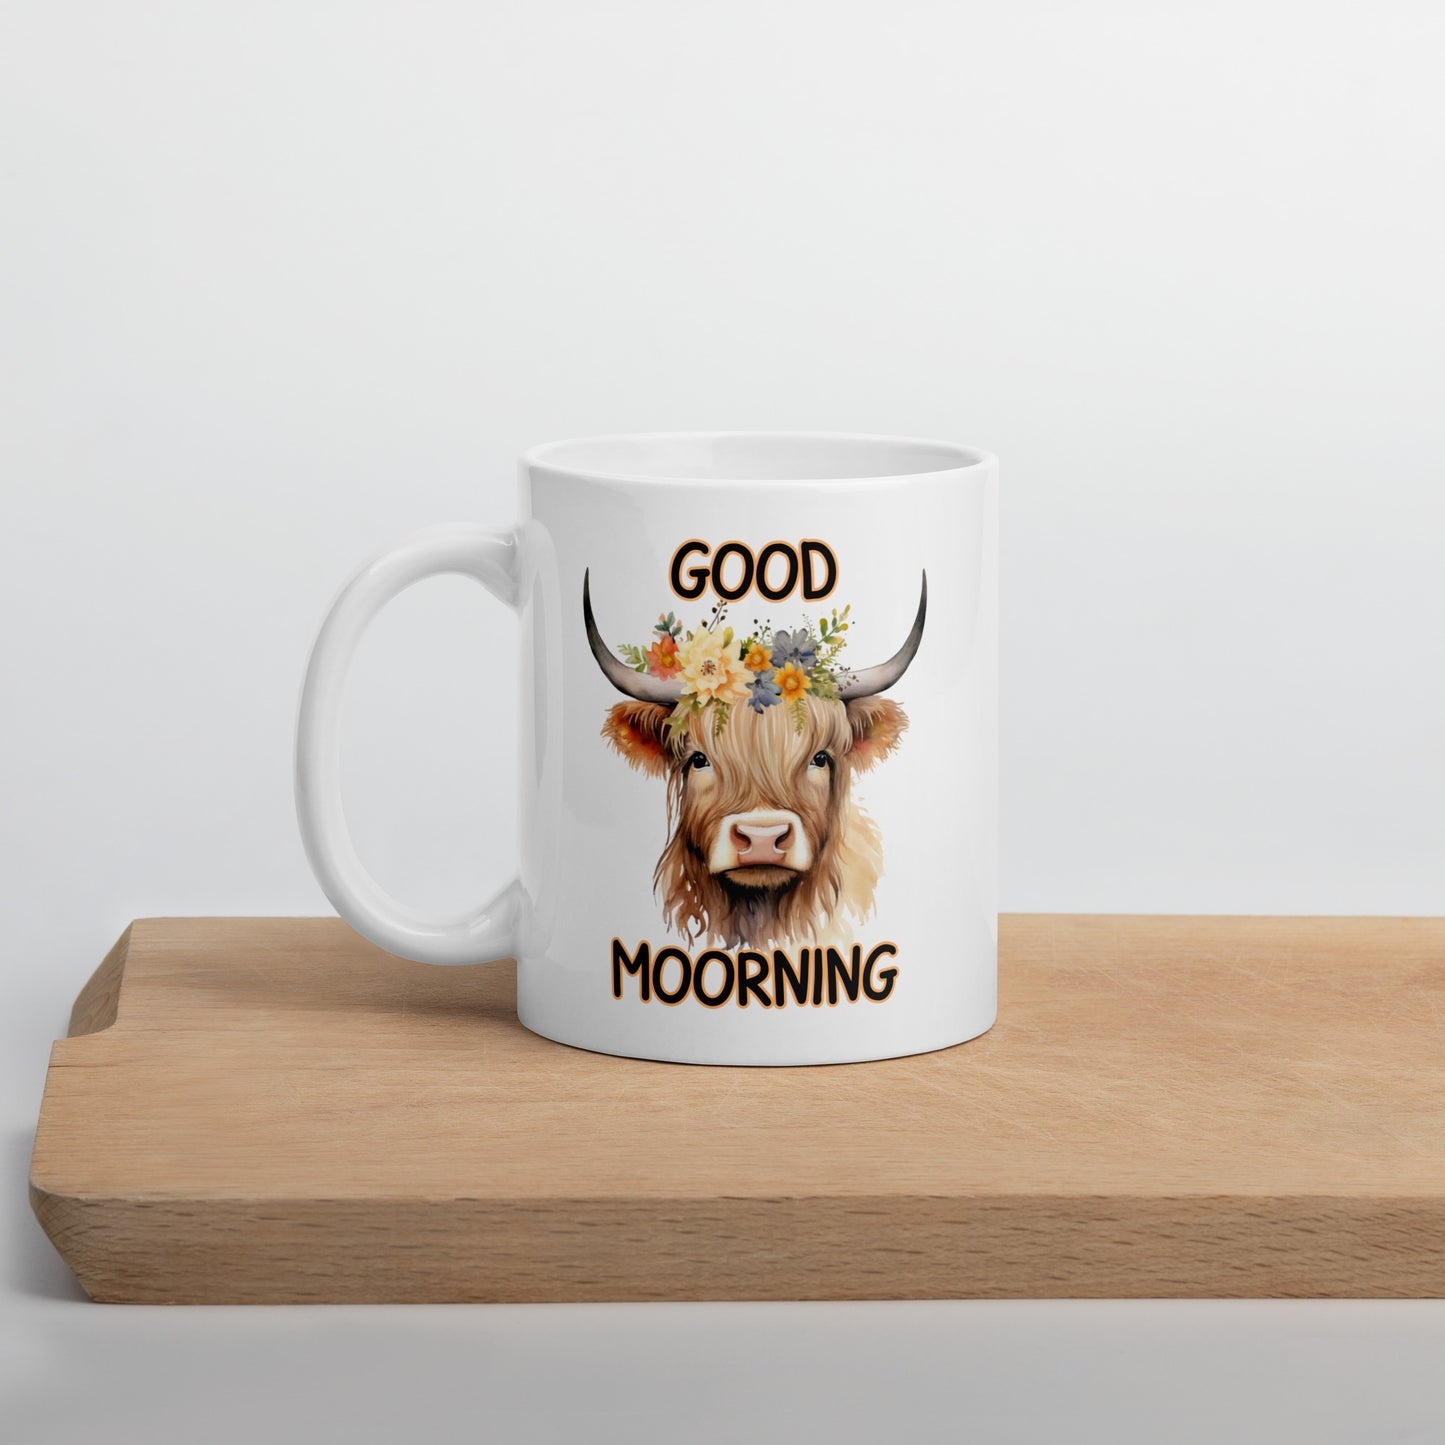 Good Morning Highland: White glossy mug